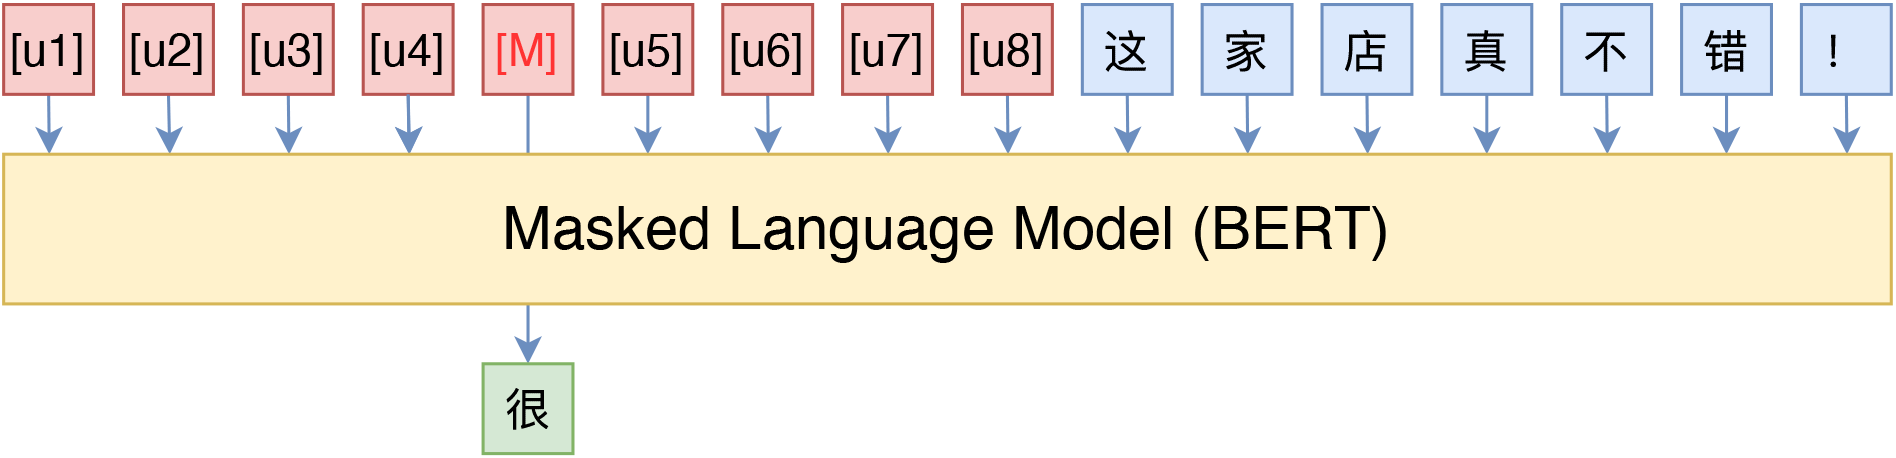 笔者在中文情感分类上使用的“BERT+P-tuning”模版